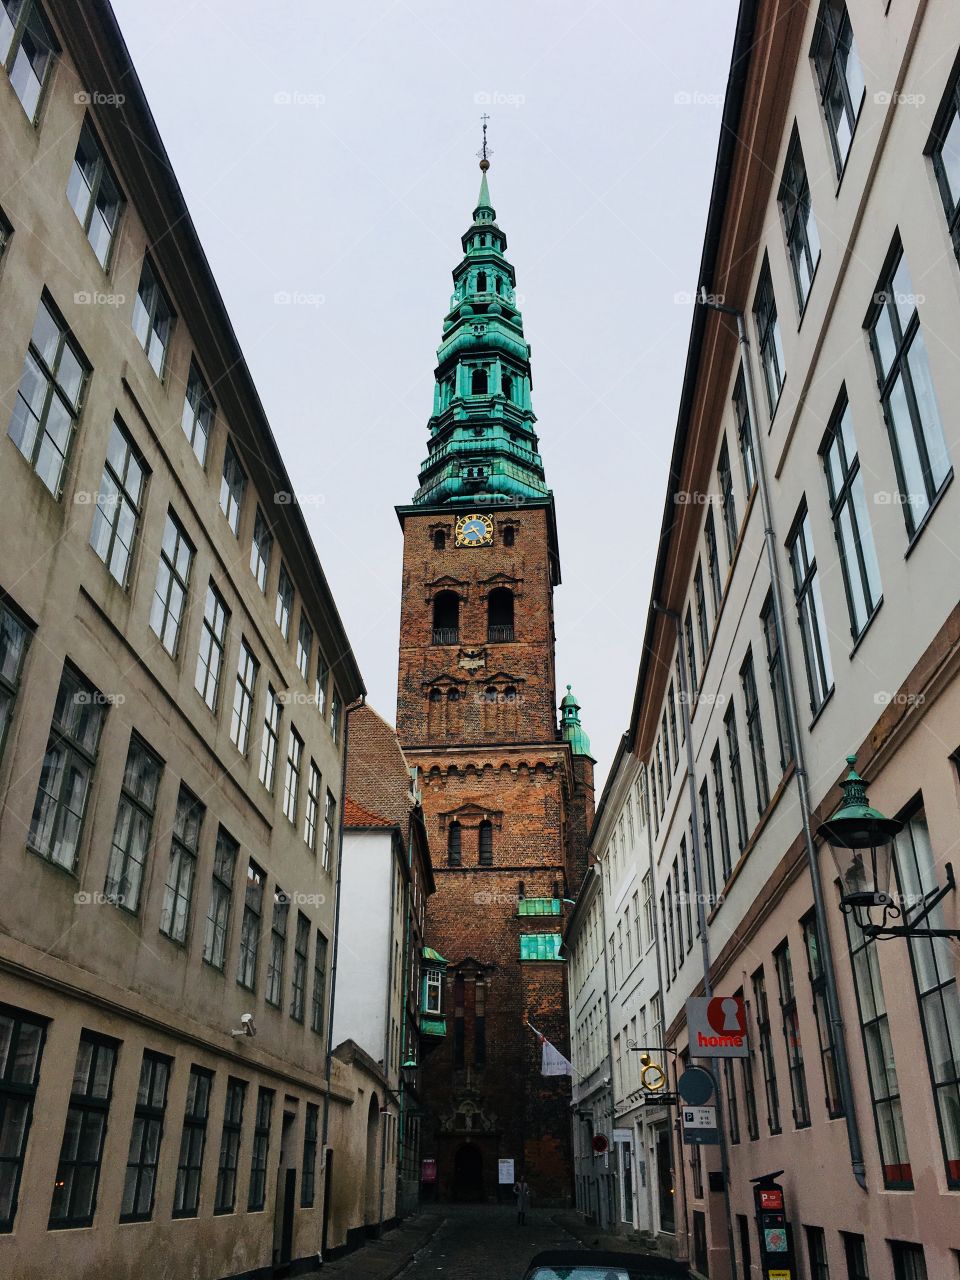 Copenhagen tower 